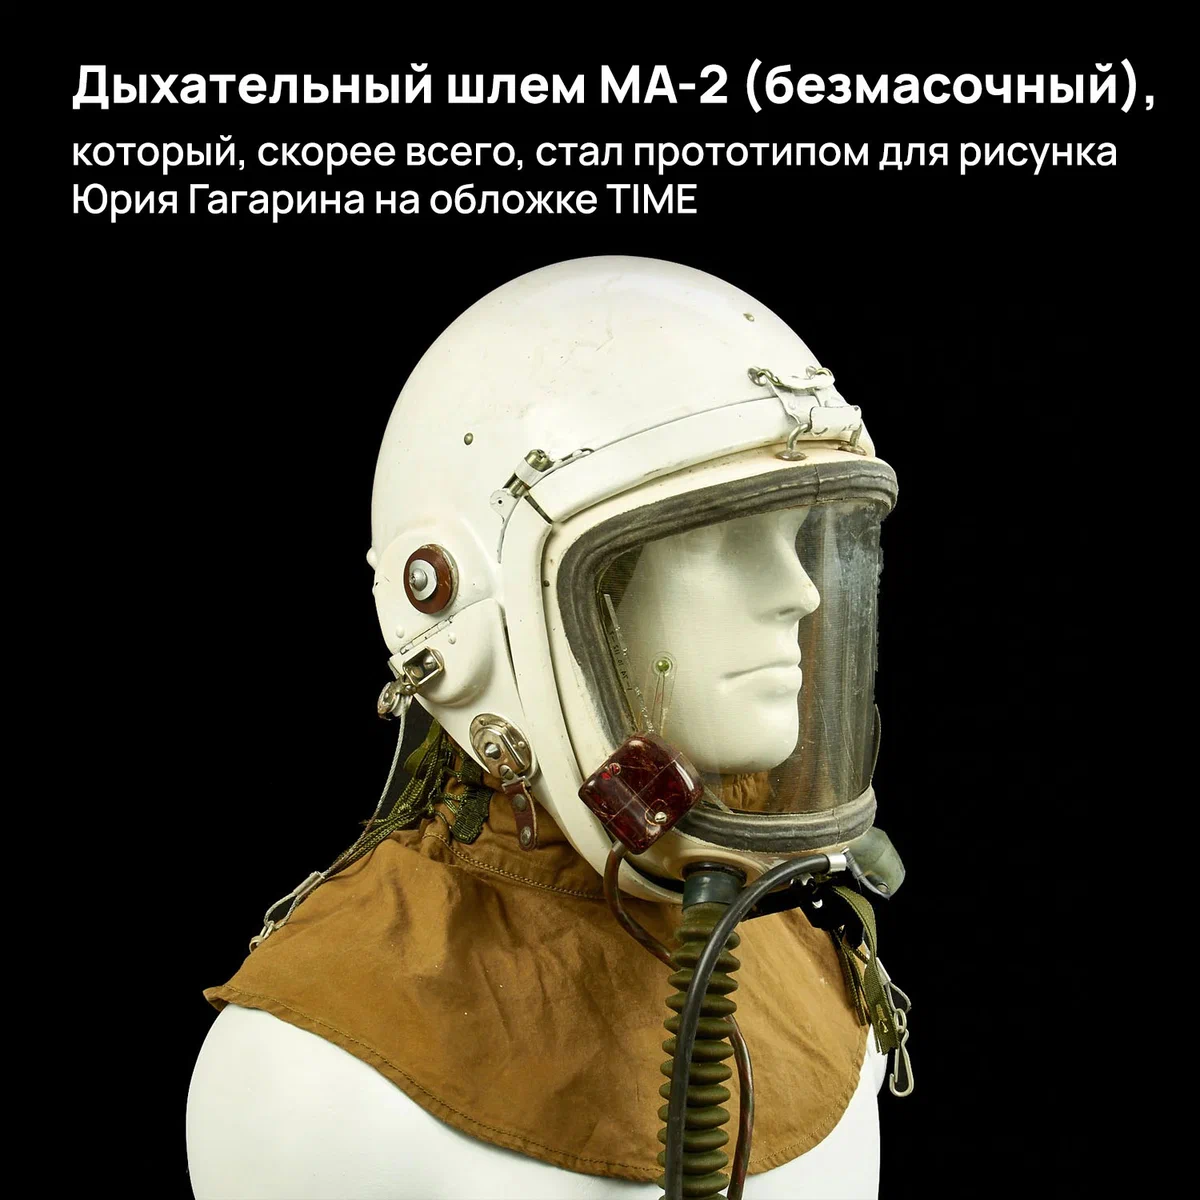 Как TIME создал «фейк» с Гагариным: что вынужден был придумать художник Шаляпин, чтобы придать обложке «космичности» height=1200px width=1200px